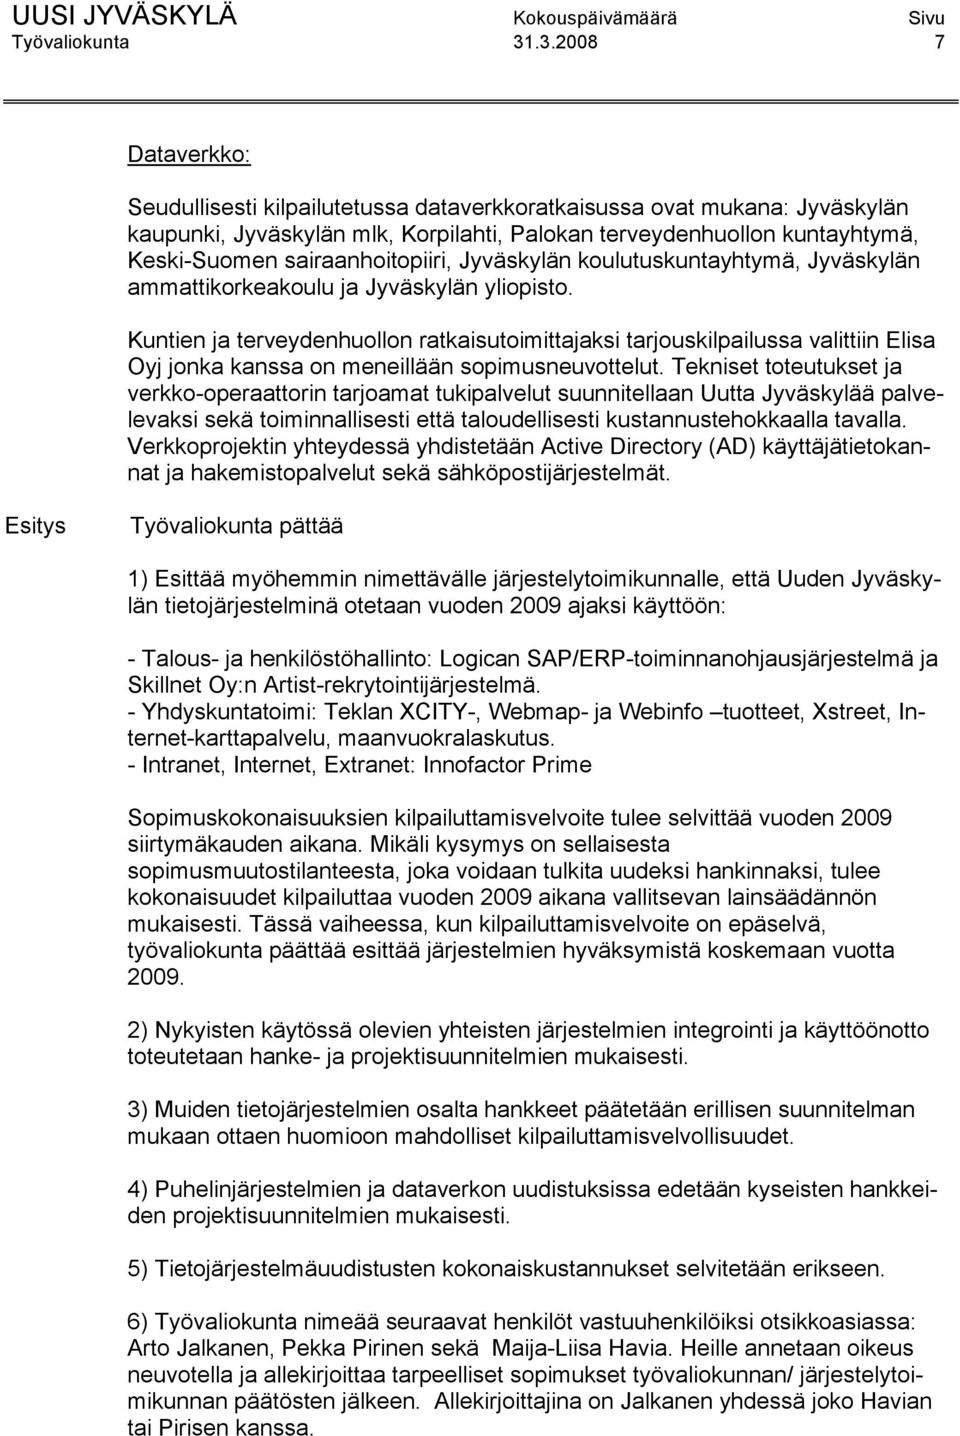 sairaanhoitopiiri, Jyväskylän koulutuskuntayhtymä, Jyväskylän ammattikorkeakoulu ja Jyväskylän yliopisto.